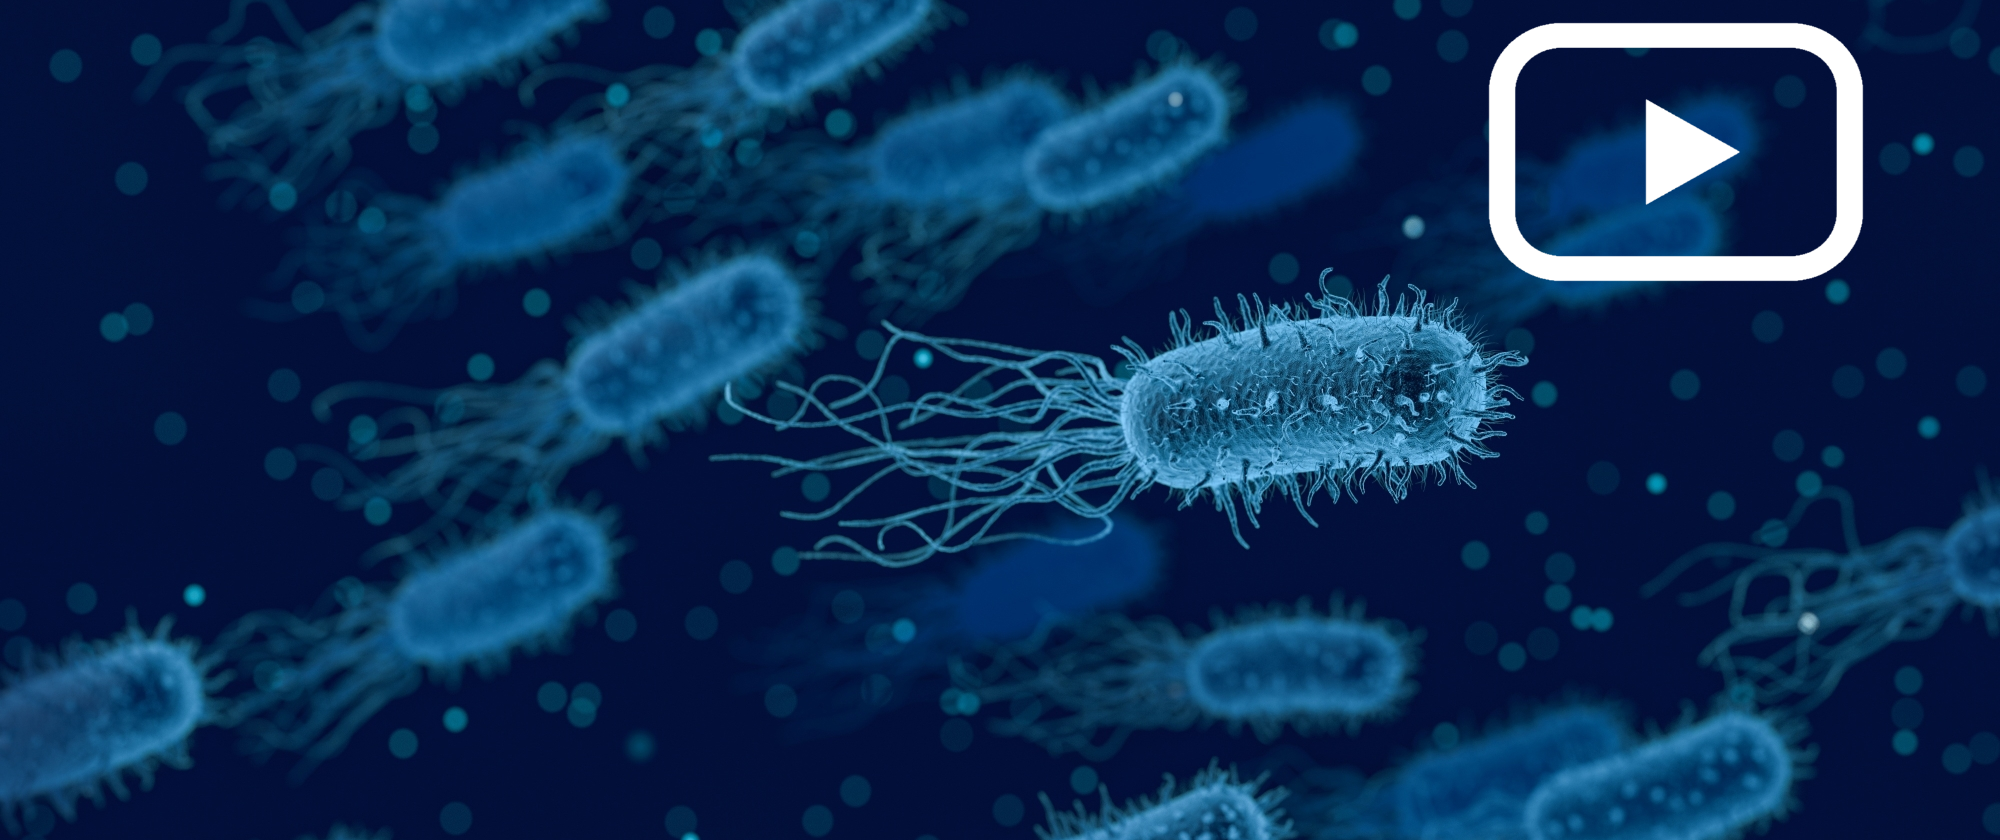 El "quorum sensing", un tipo de comunicación bacteriana, consiste en la regulación de la expresión génica en respuesta a fluctuaciones en la densidad poblacional de los microorganismos (Imagen de qimono en Pixabay).